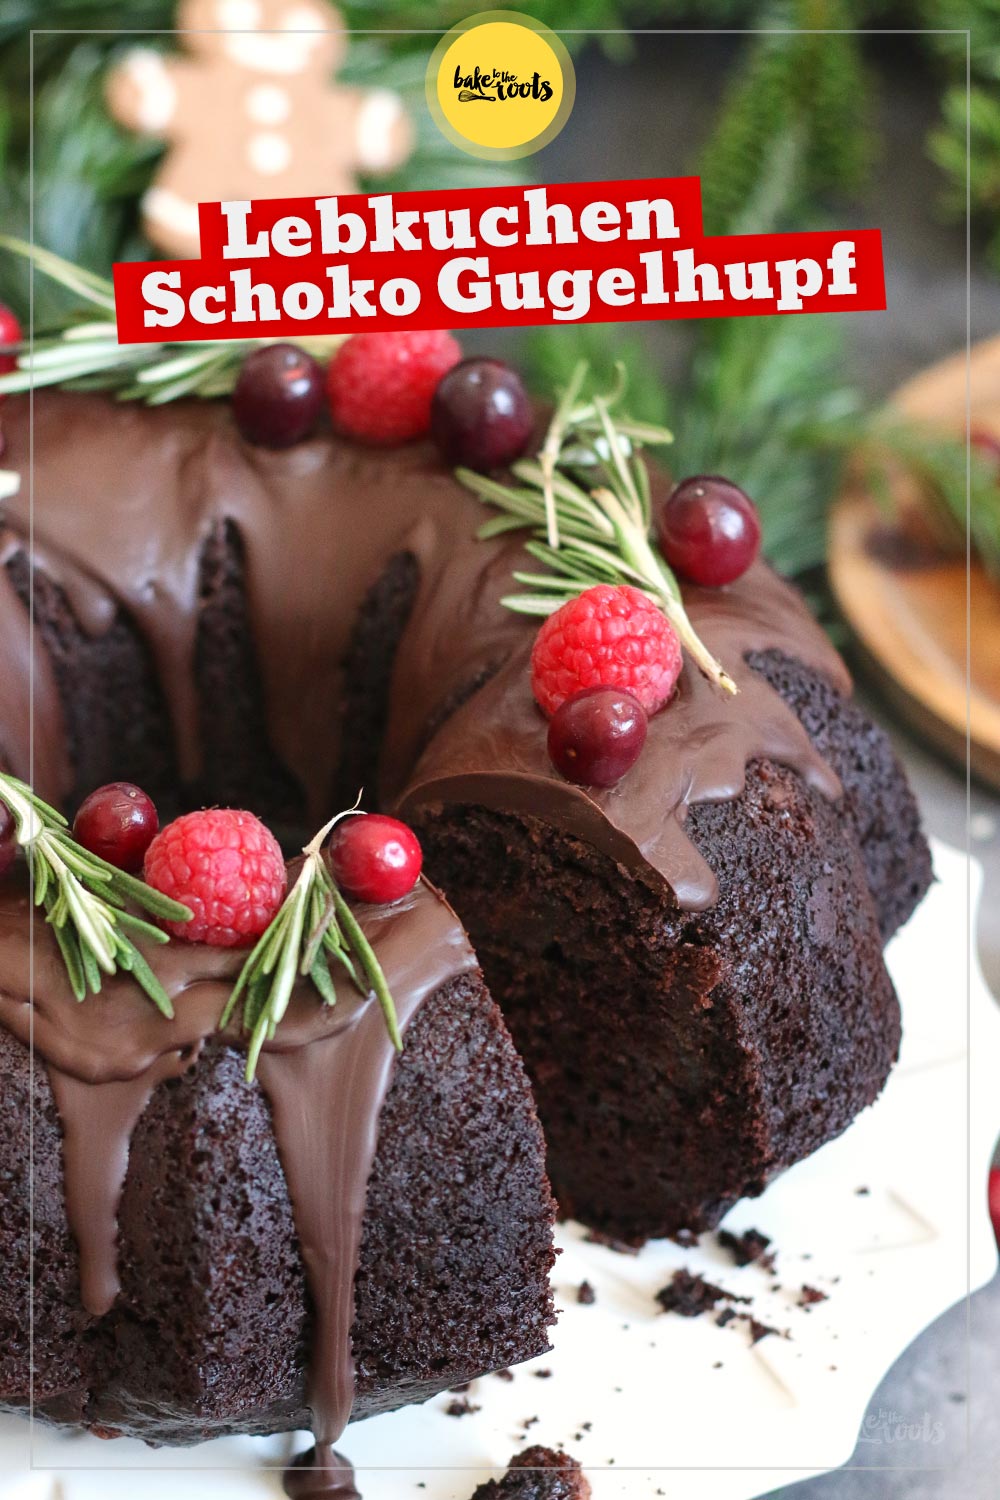 Lebkuchen Schokolade Gugelhupf Adventskranz | Bake to the roots